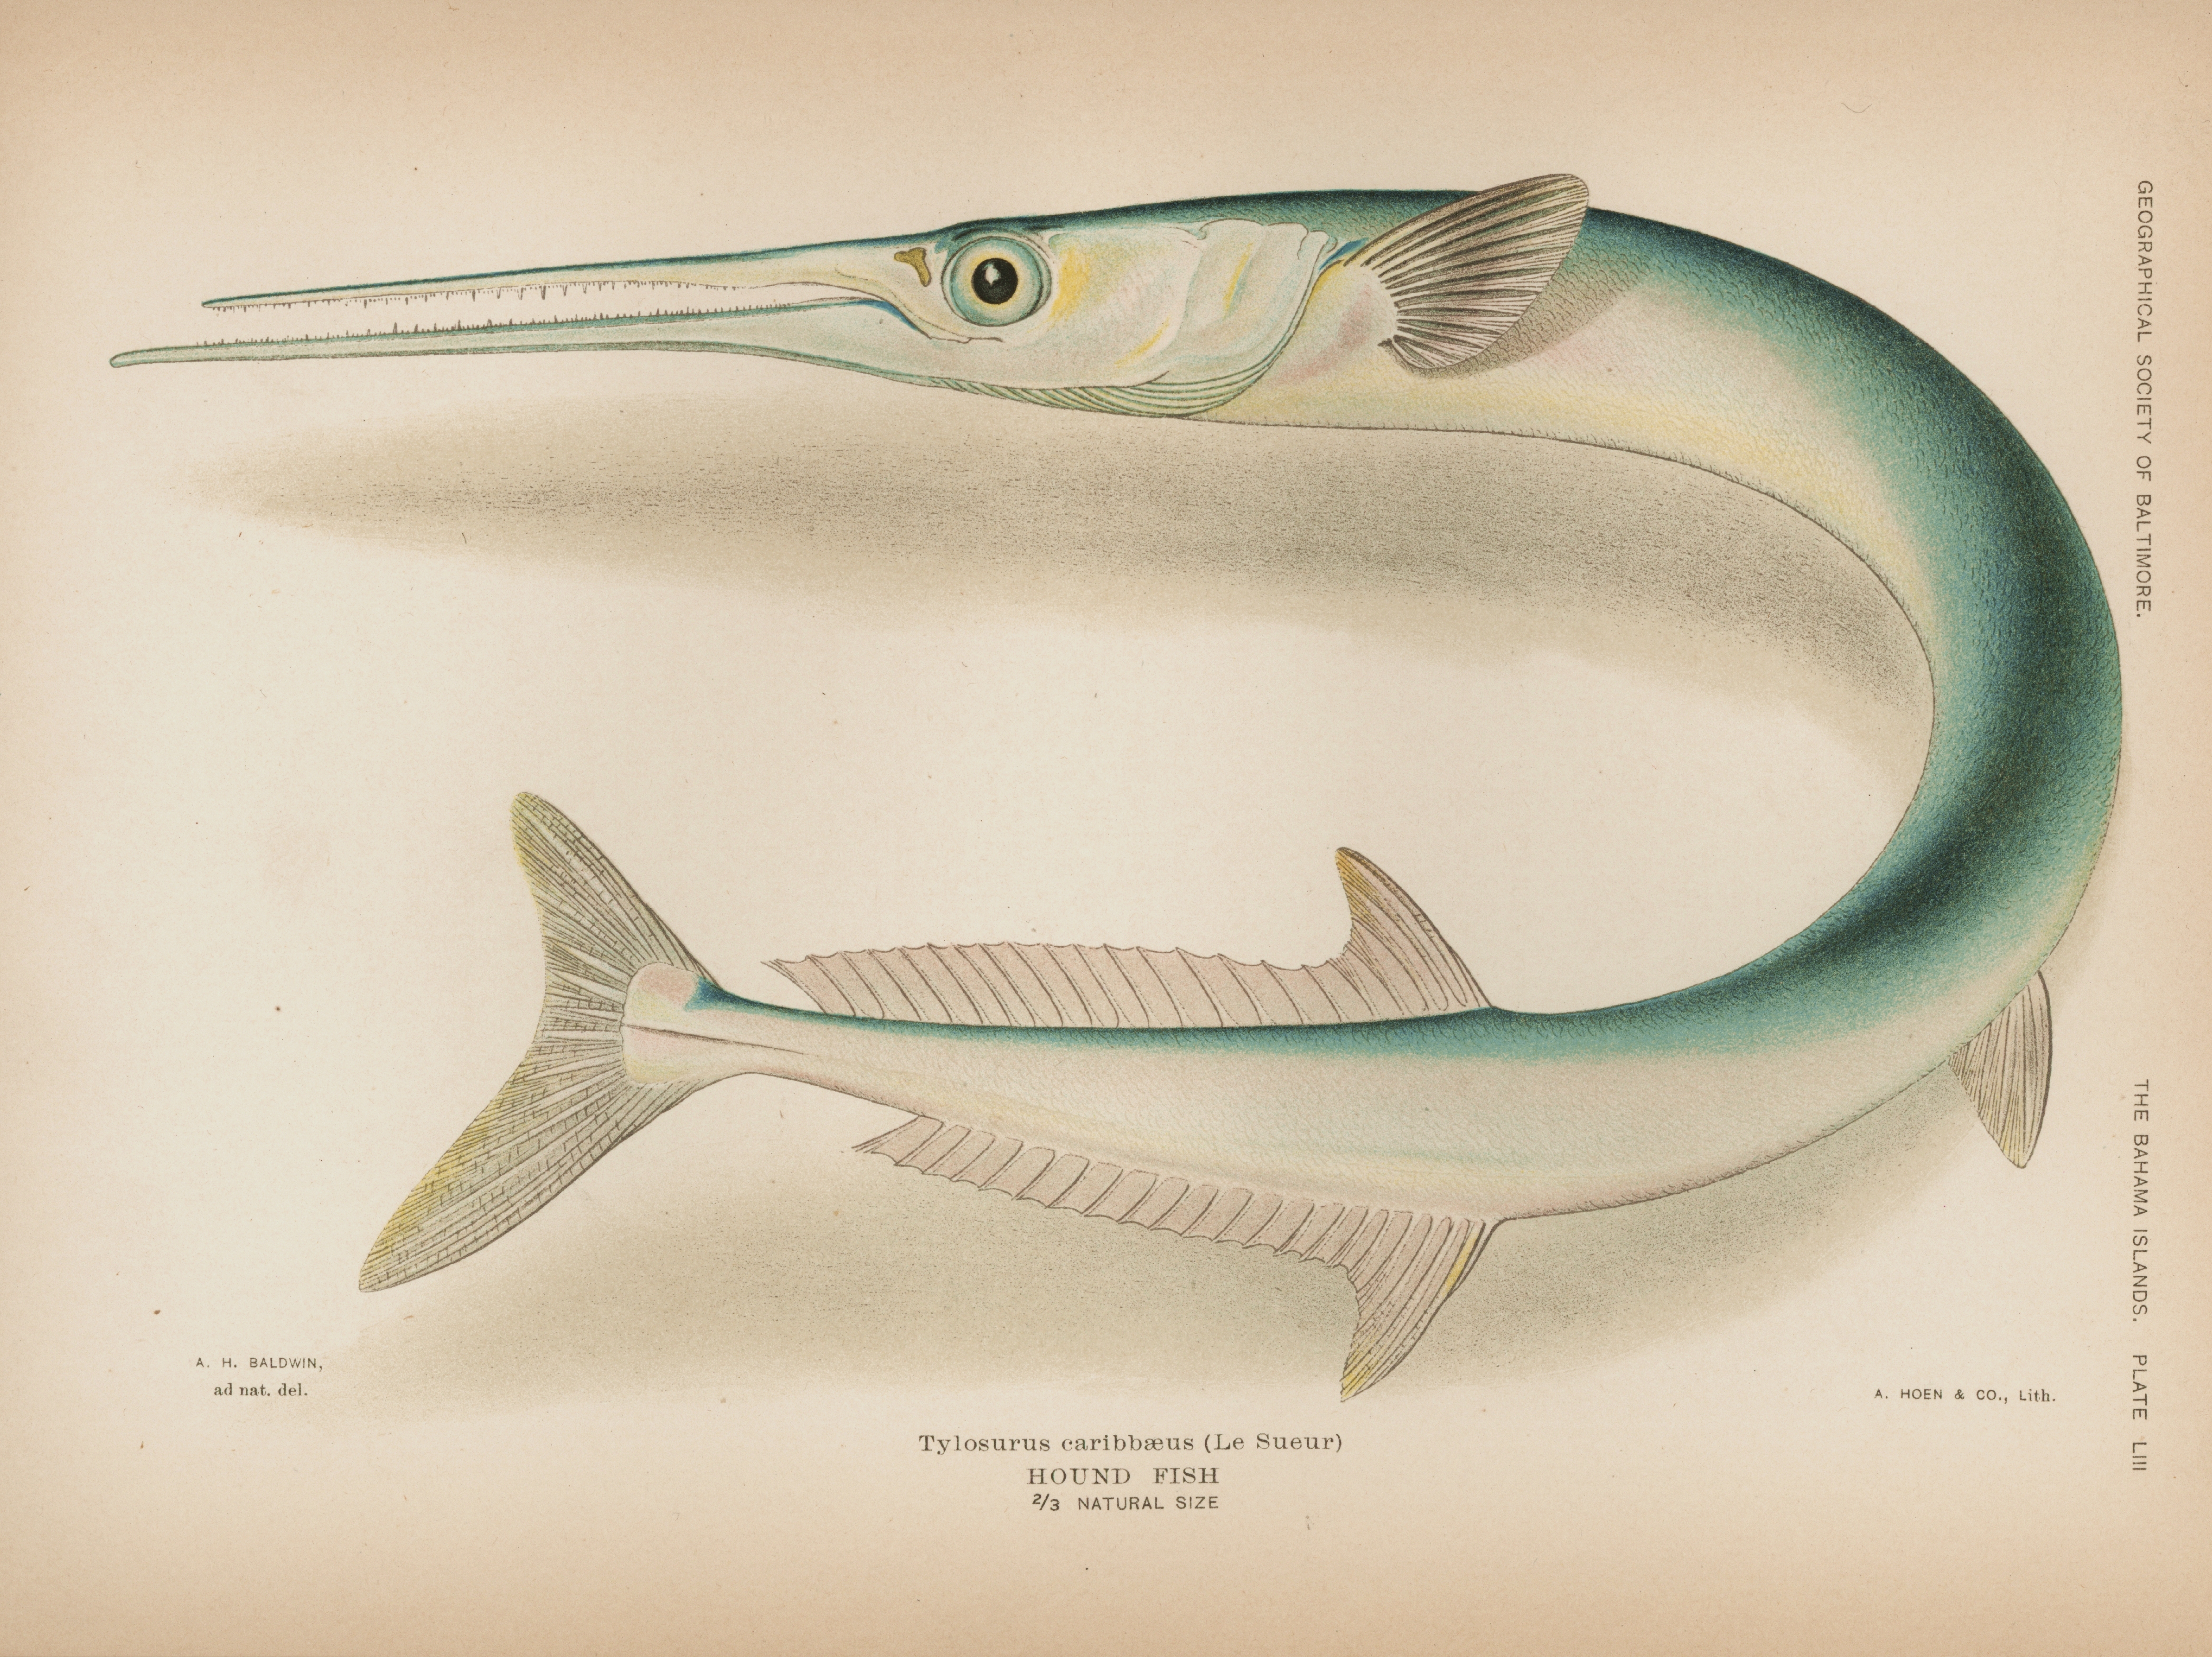 Houndfish - Wikipedia